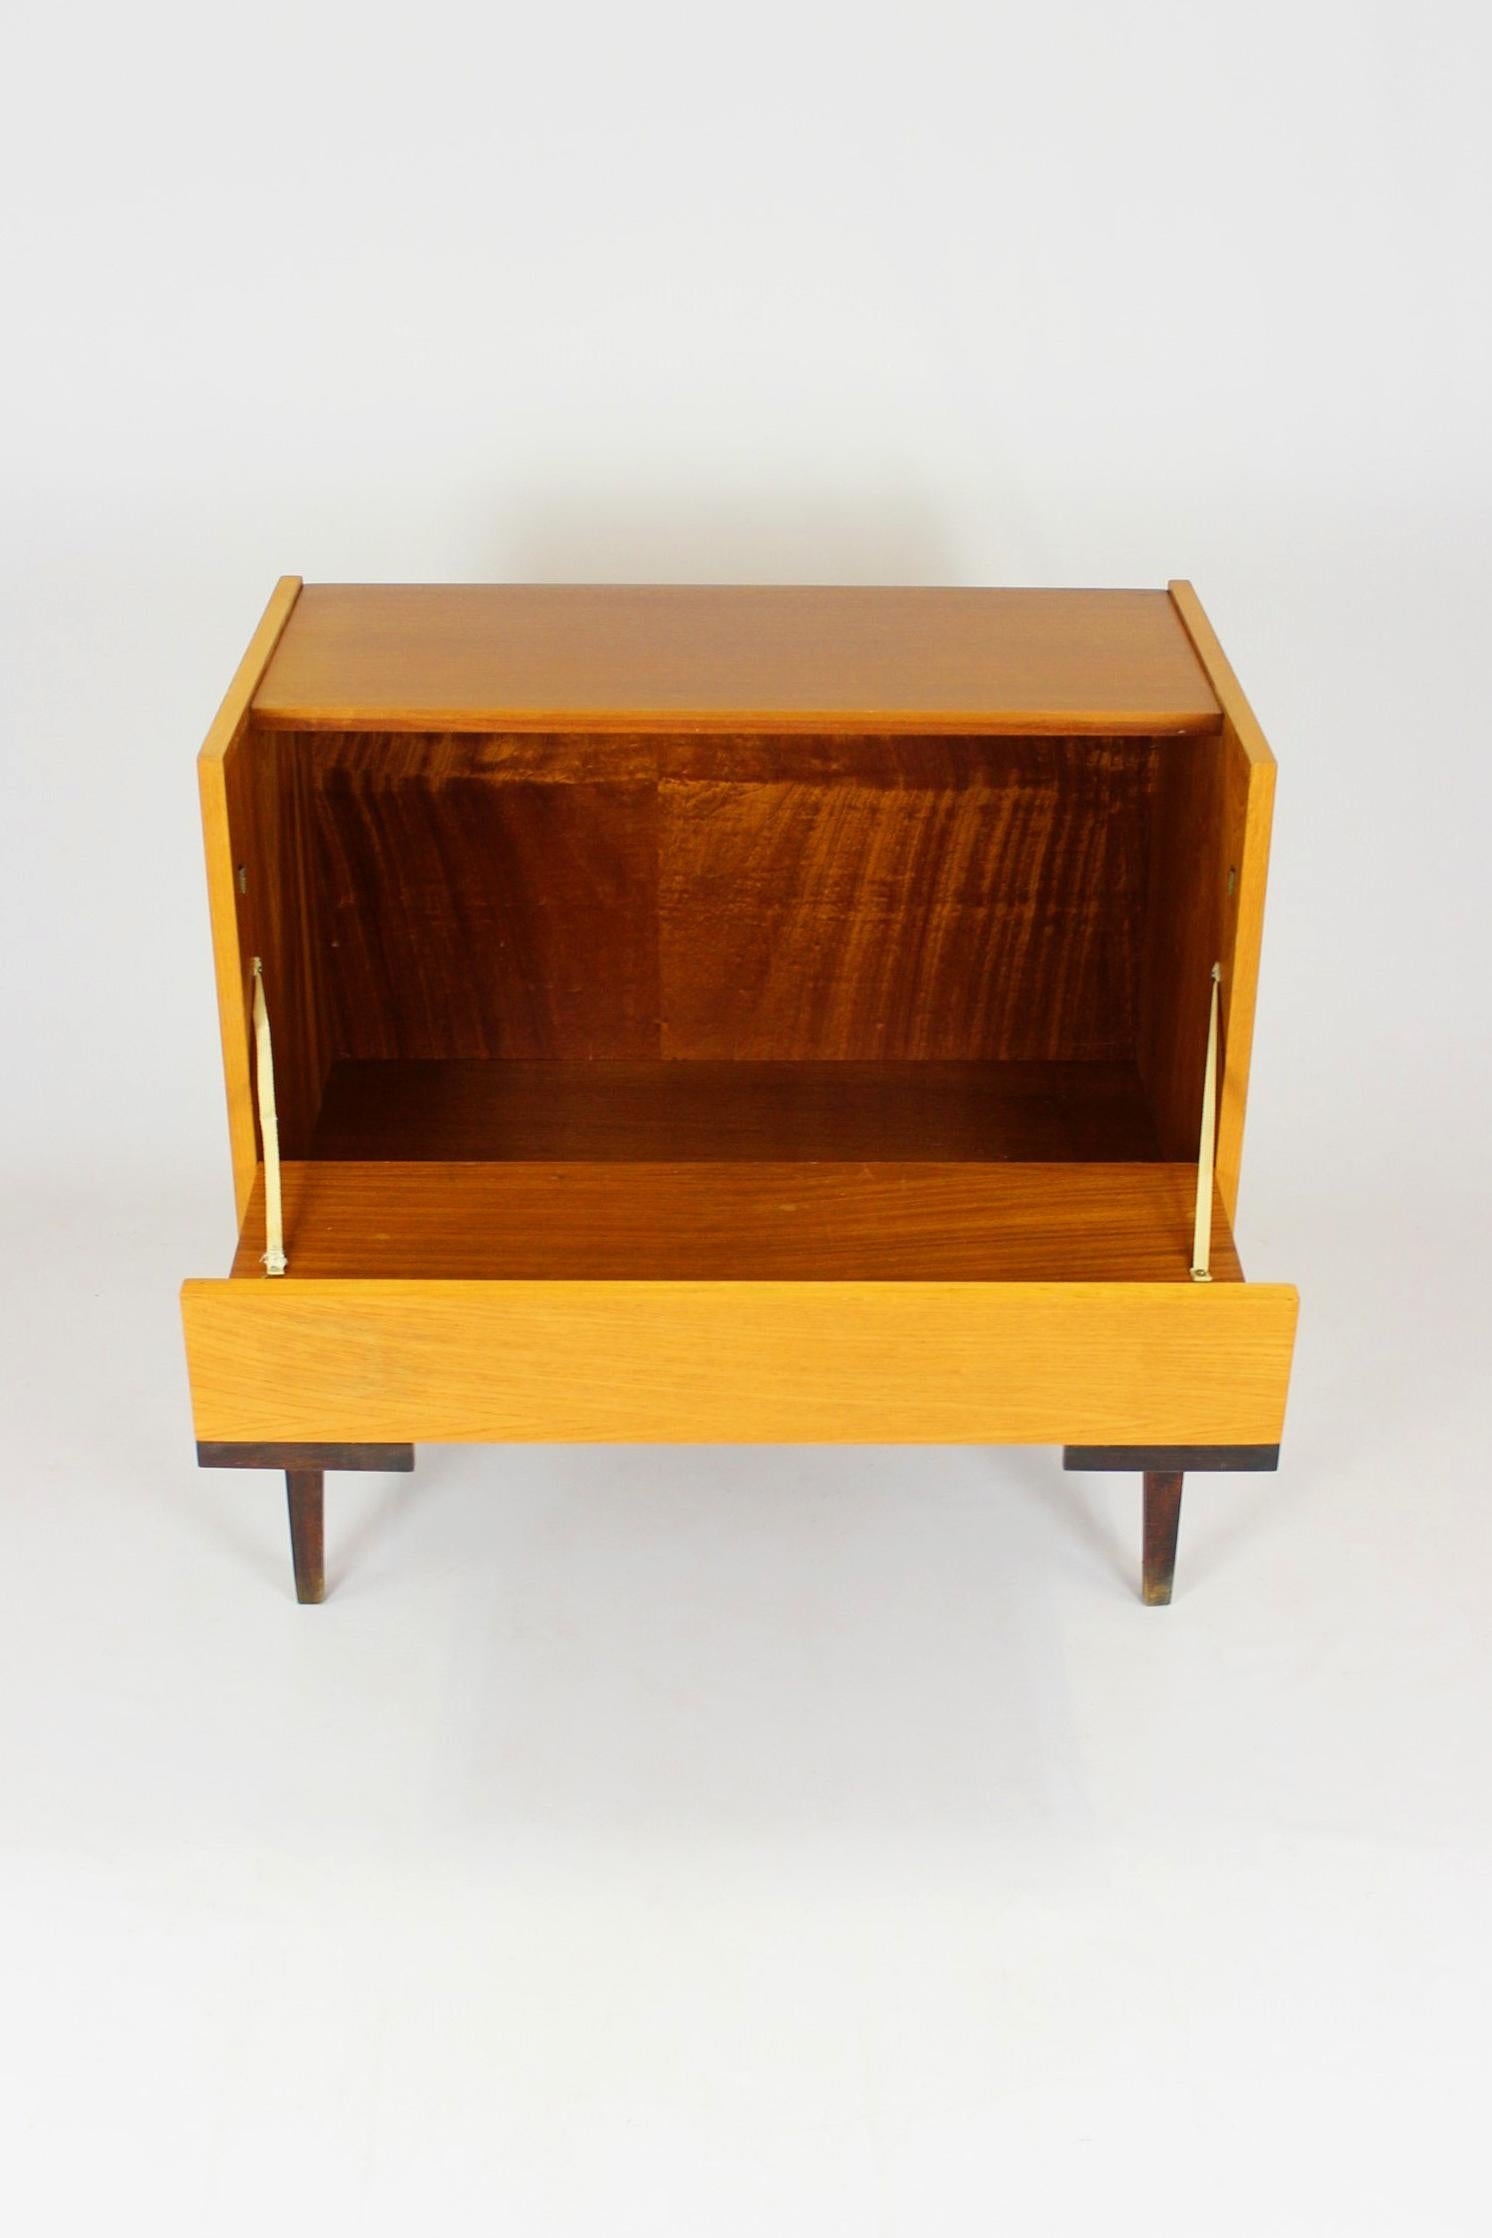 Dieses kleine Sideboard aus Esche und Mahagoni wurde 1970 von UP Zavody in der Tschechoslowakei hergestellt. Es ist in seinem ursprünglichen, sehr guten Zustand erhalten.
Wir haben weitere Möbel aus diesem Set (Kleiderschrank, 2 Sideboards,